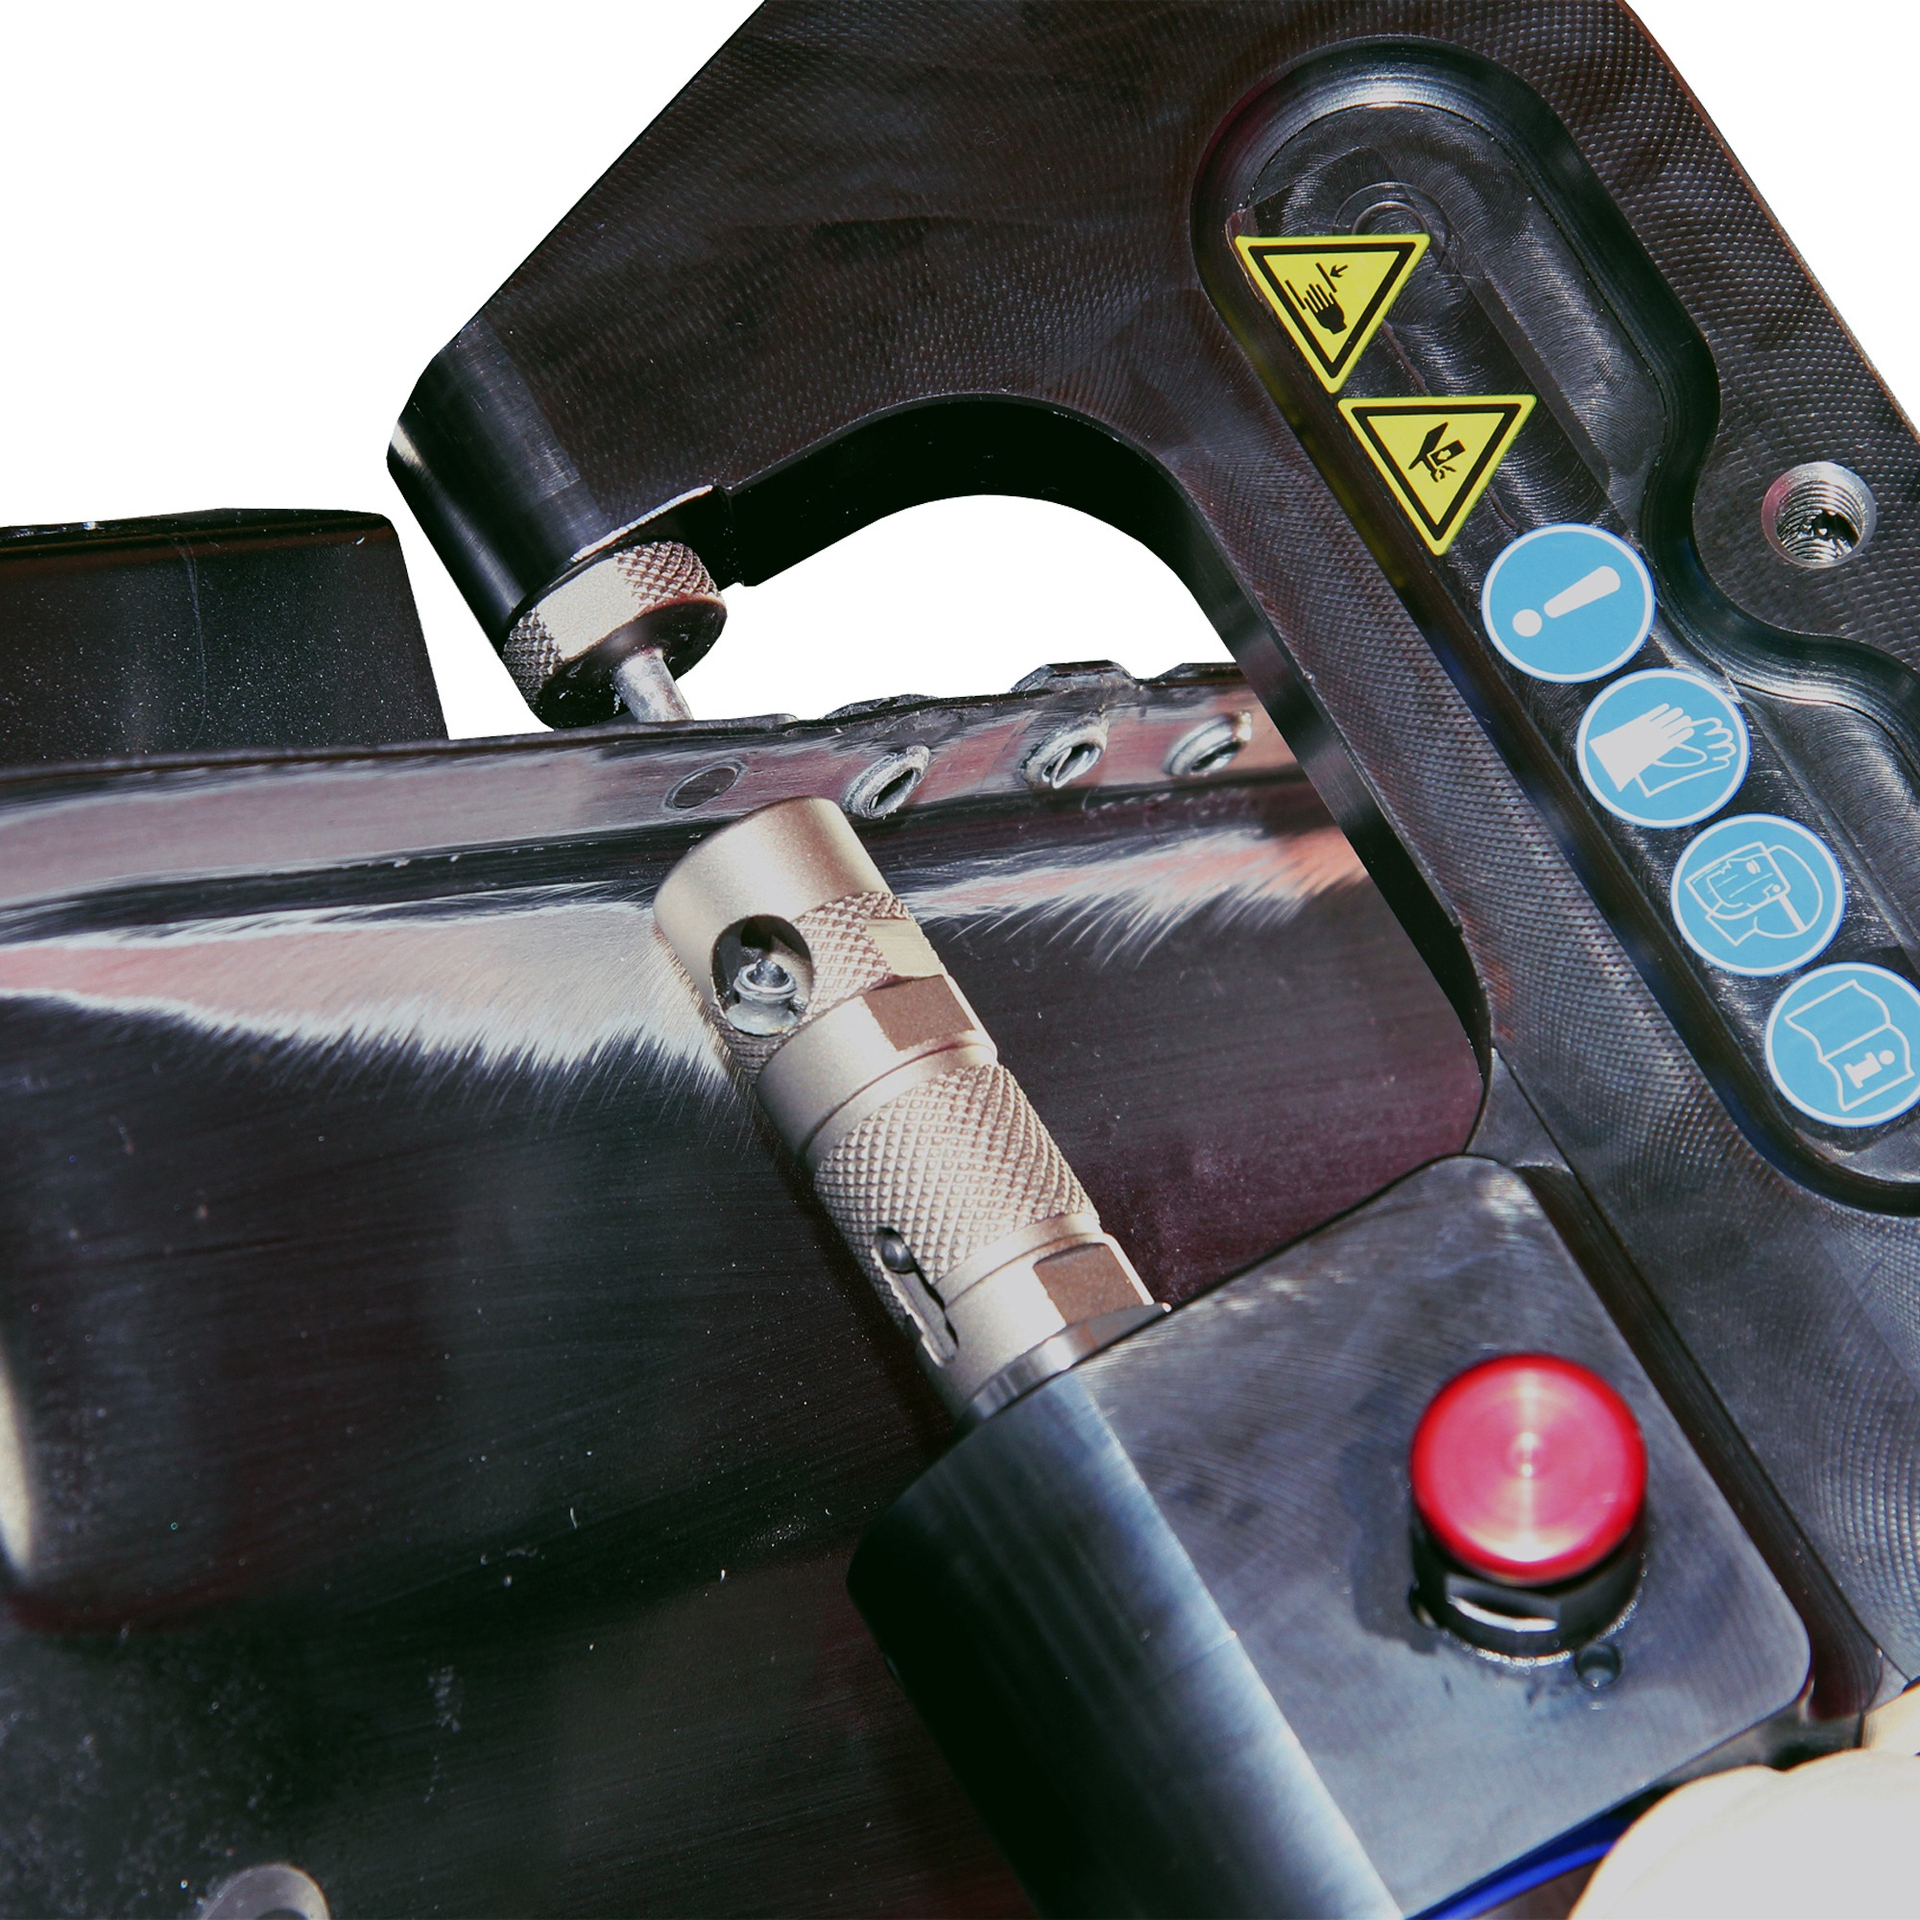 XPress 800 Basic Set Заклепочный инструмент для выдавливания и установки ремонтных заклепок. Wieländer+Schill - Германия фото